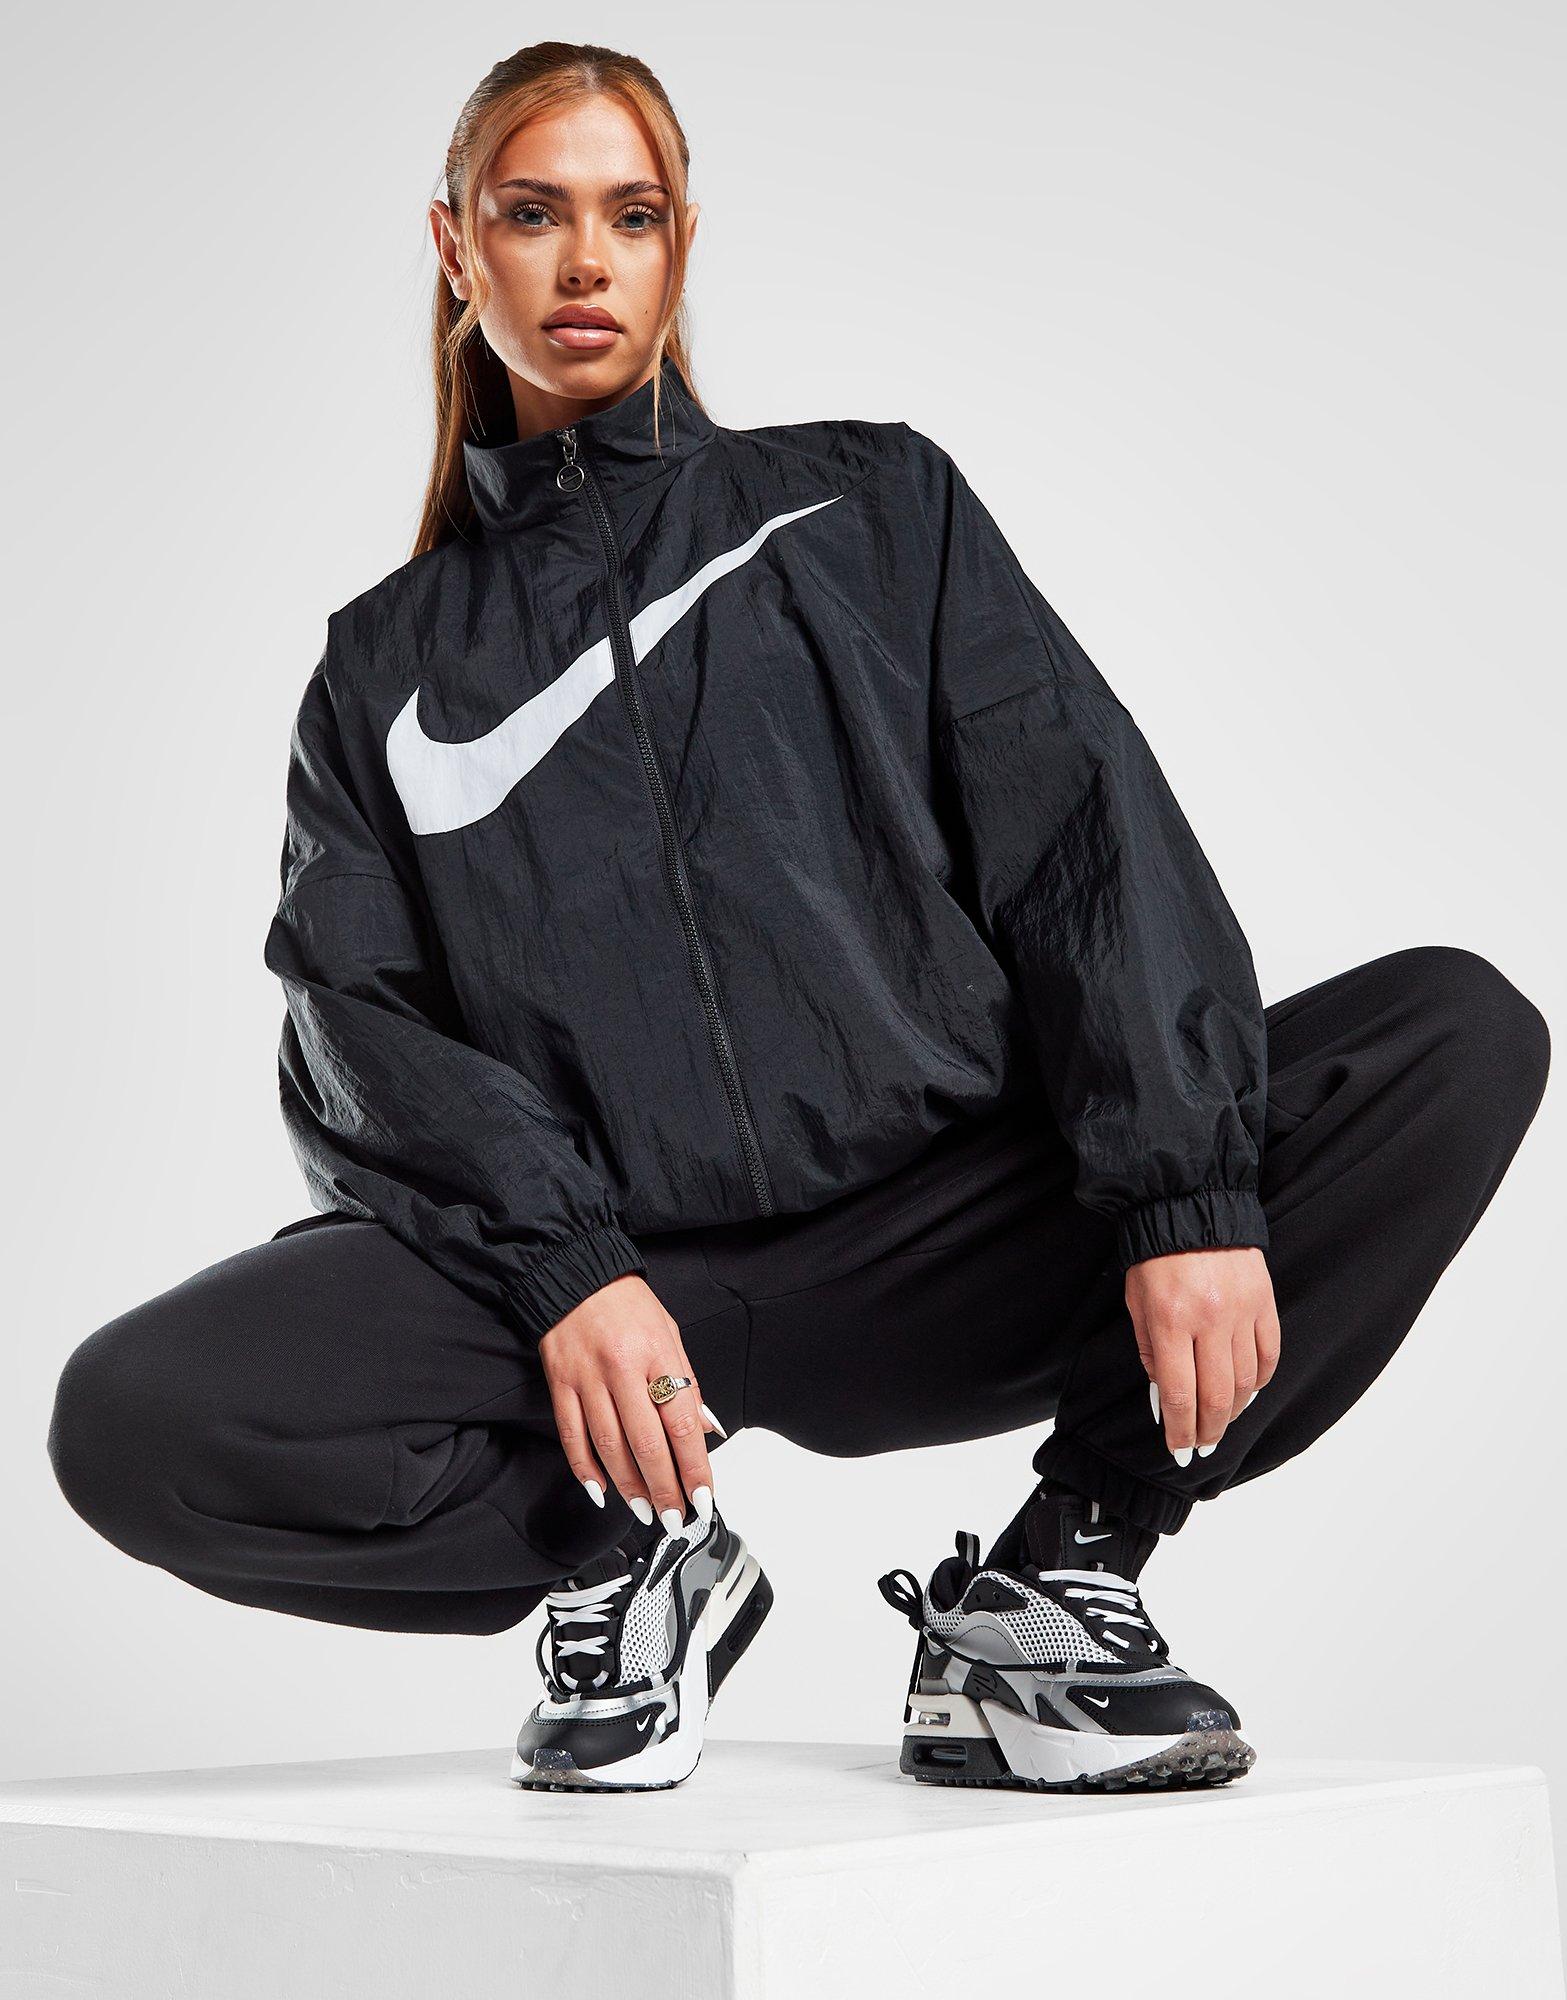 Verwacht het Toegeven Niet genoeg Black White Nike Swoosh Woven Jacket | JD Sports